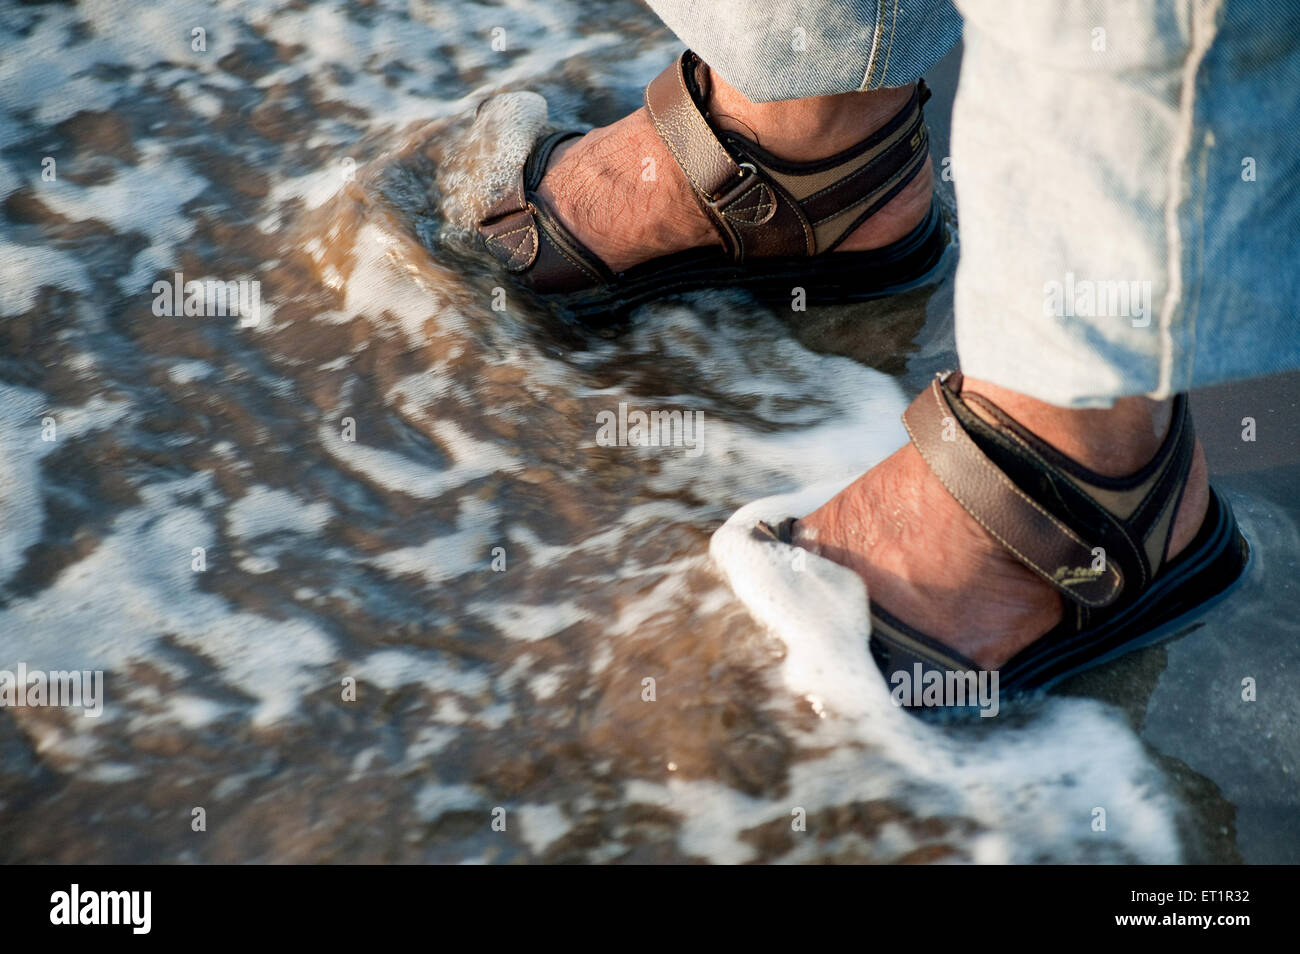 Las olas del mar o navegar por grietas en los pasos en la playa Alibag nagaon ; ; ; Maharashtra India Foto de stock